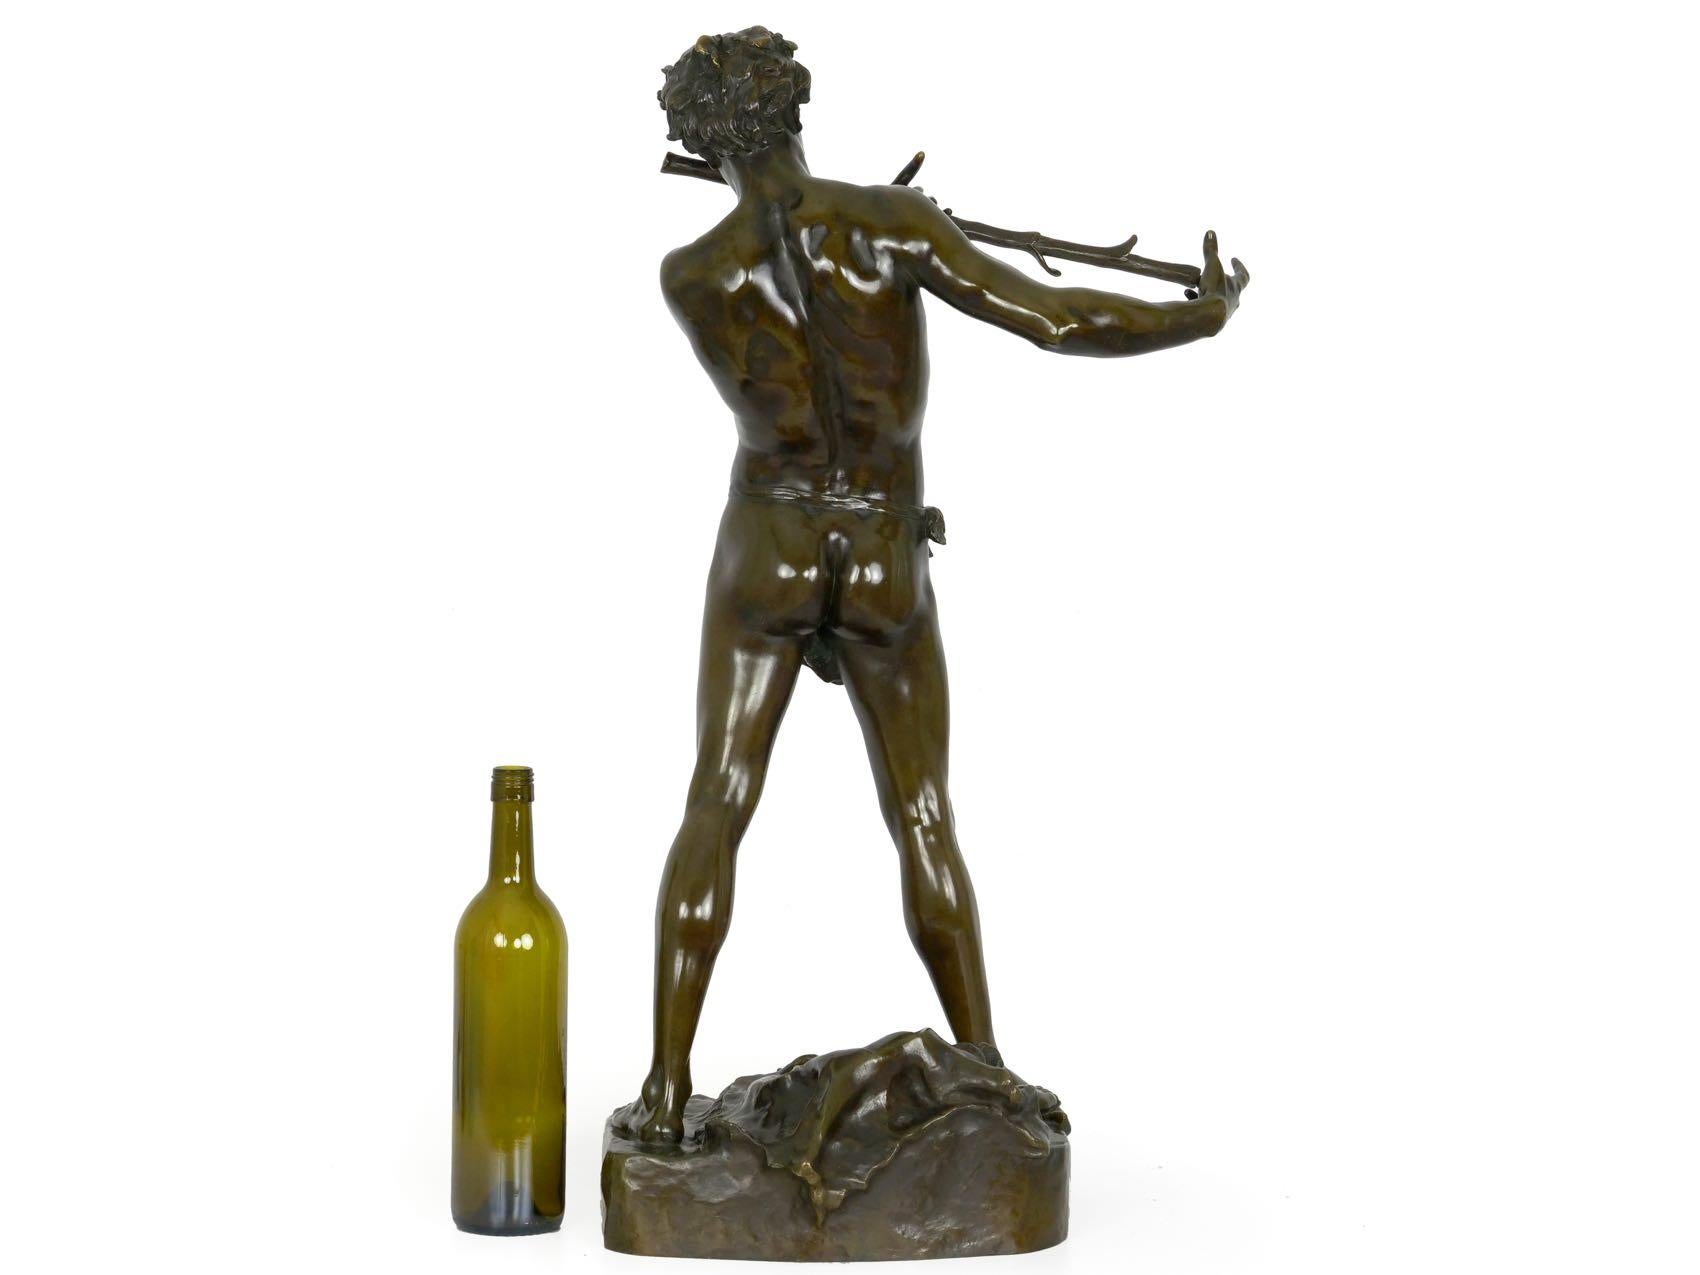 French Antique Bronze Sculpture “L’Improvisateur” by Felix Charpentier & Colin 4